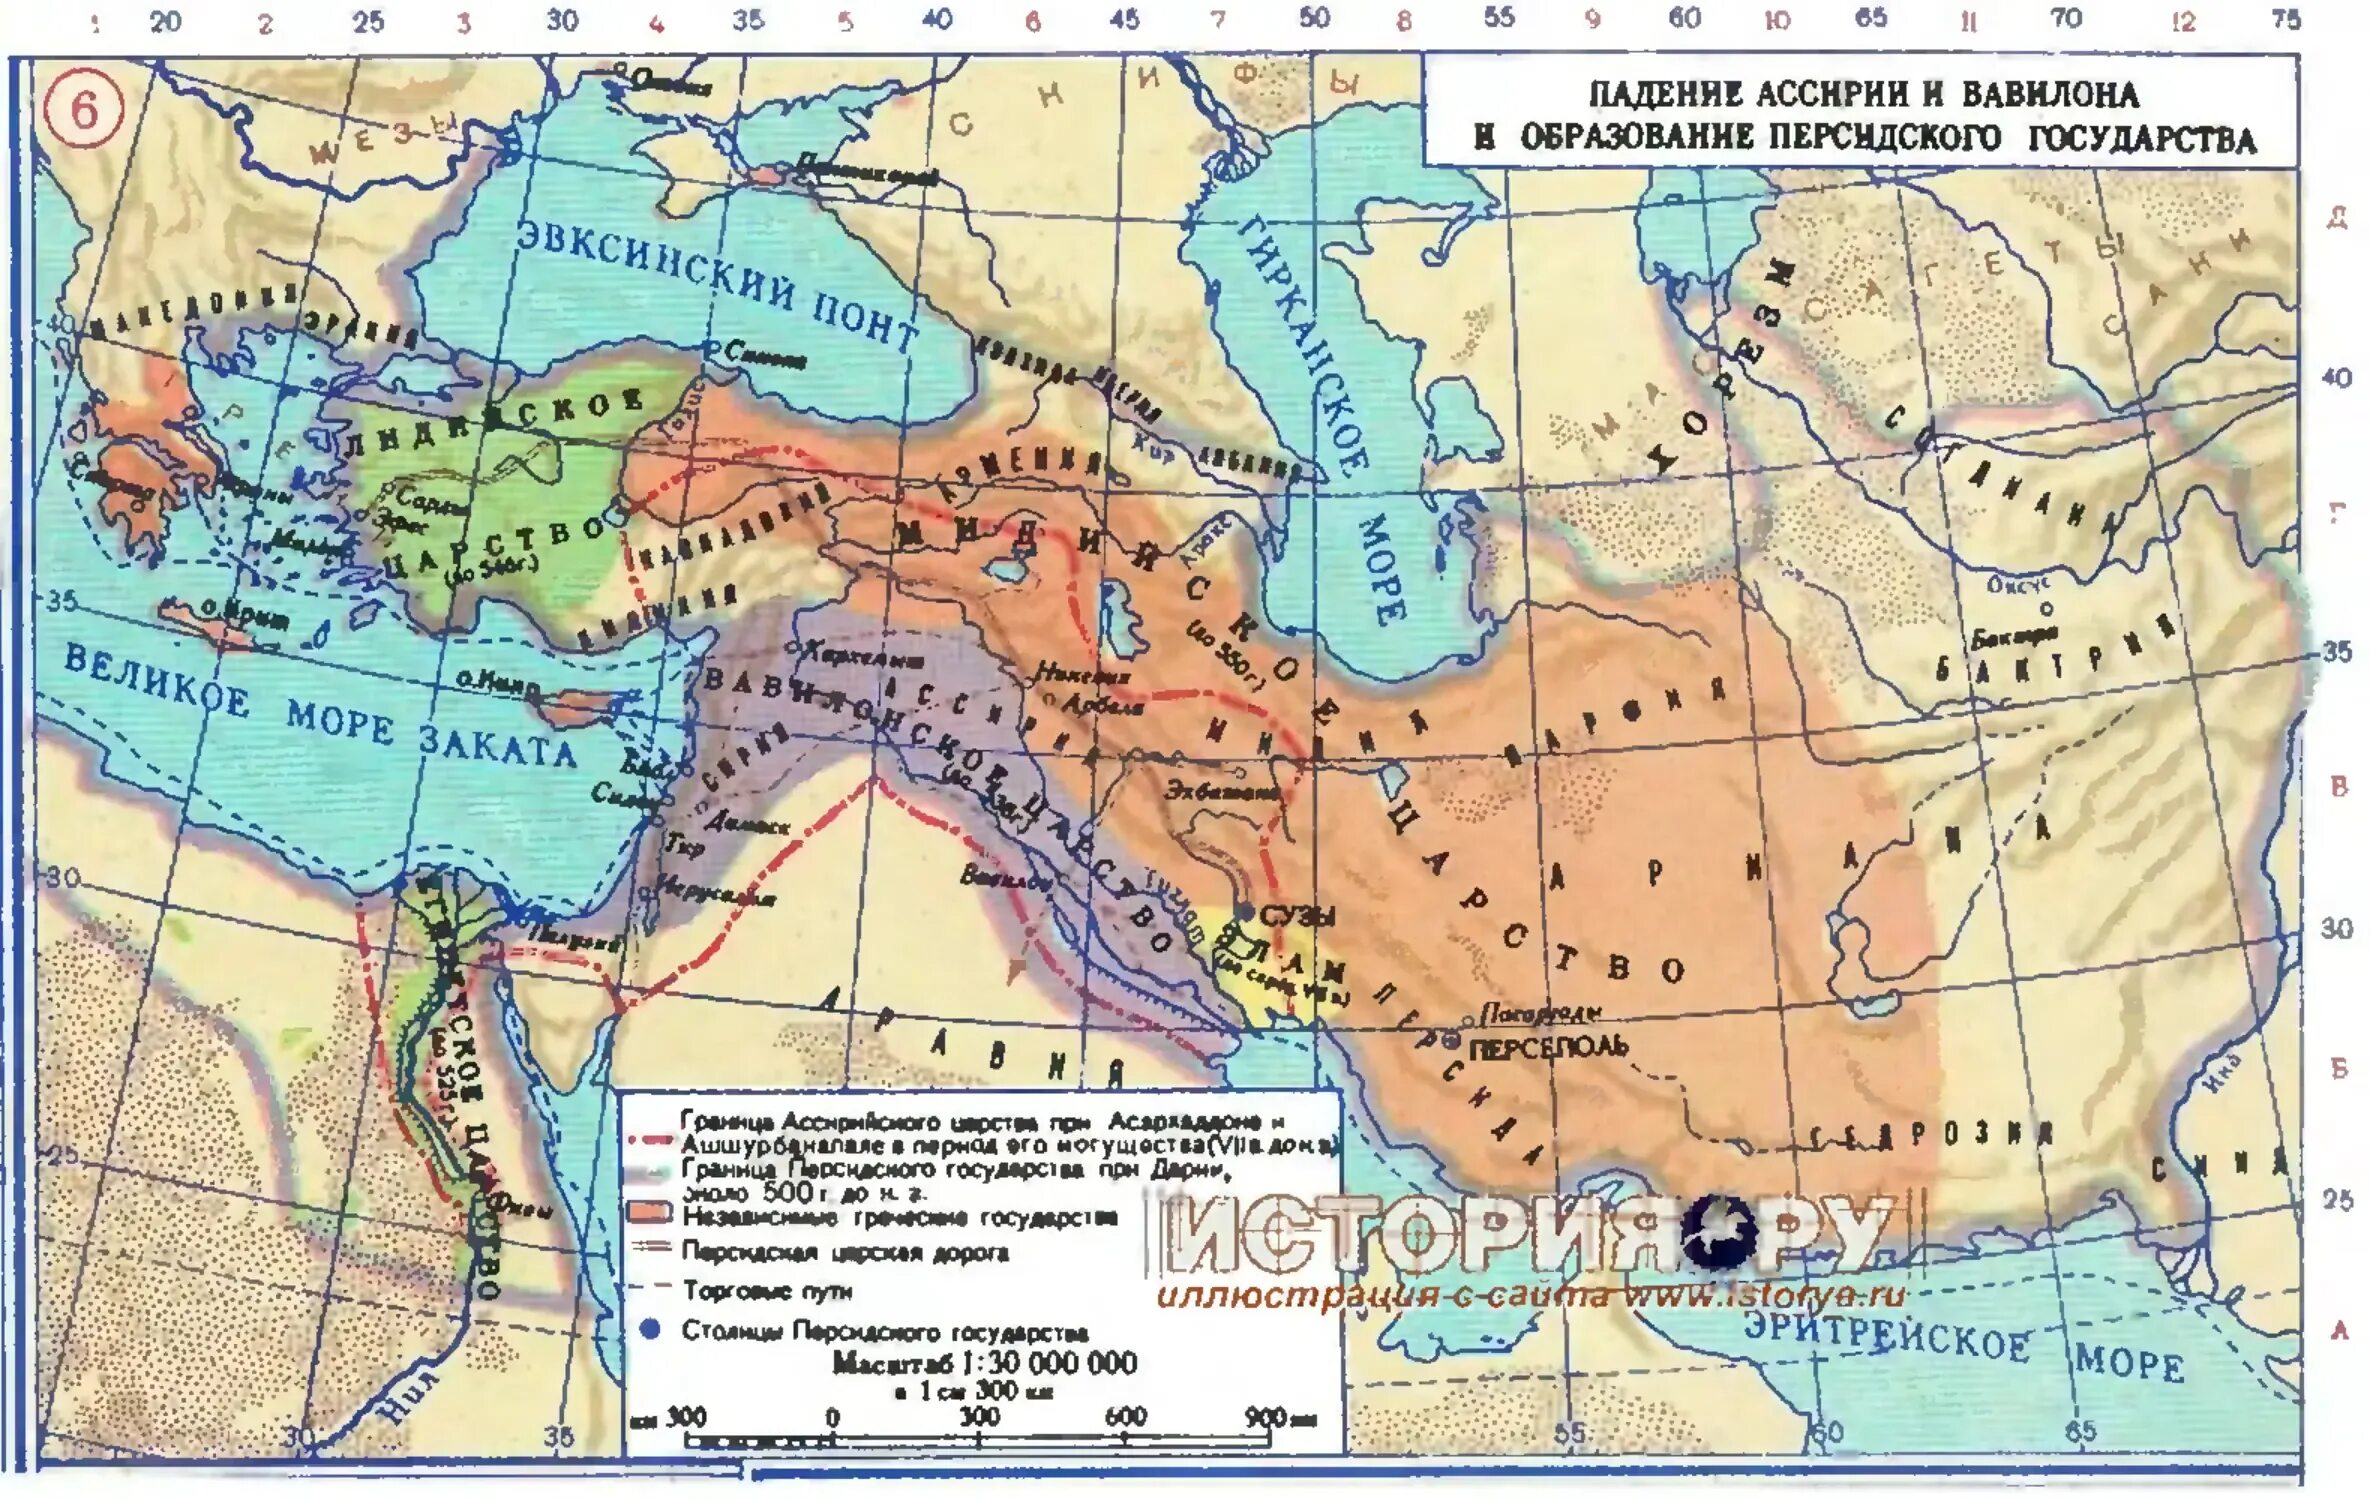 Местоположение государства. Доевний Авилон на карте.